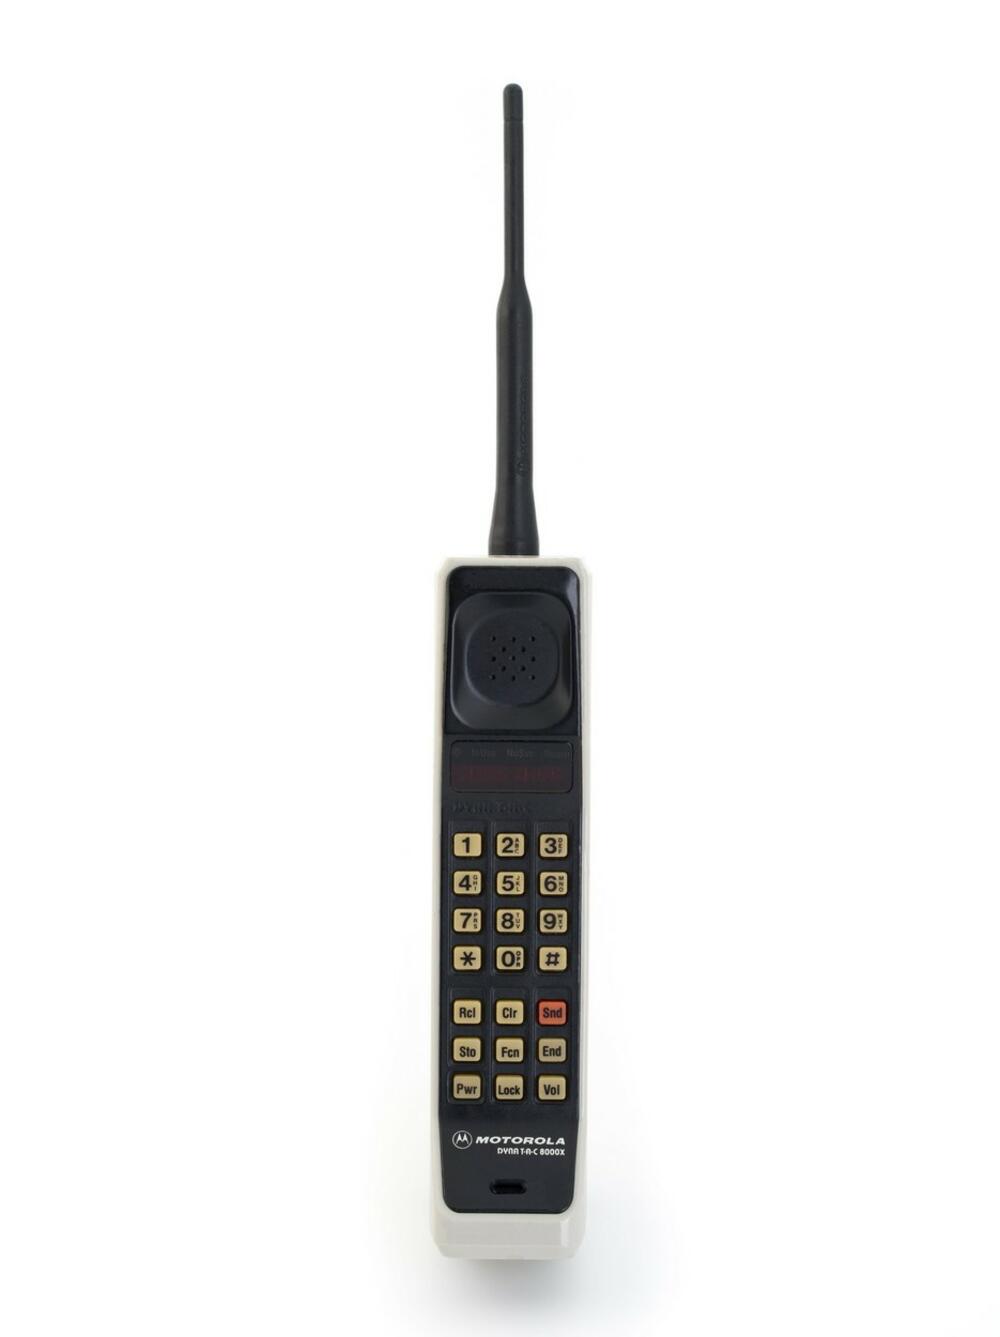 Motorola DynaTAC 8000x, prvi mobilni